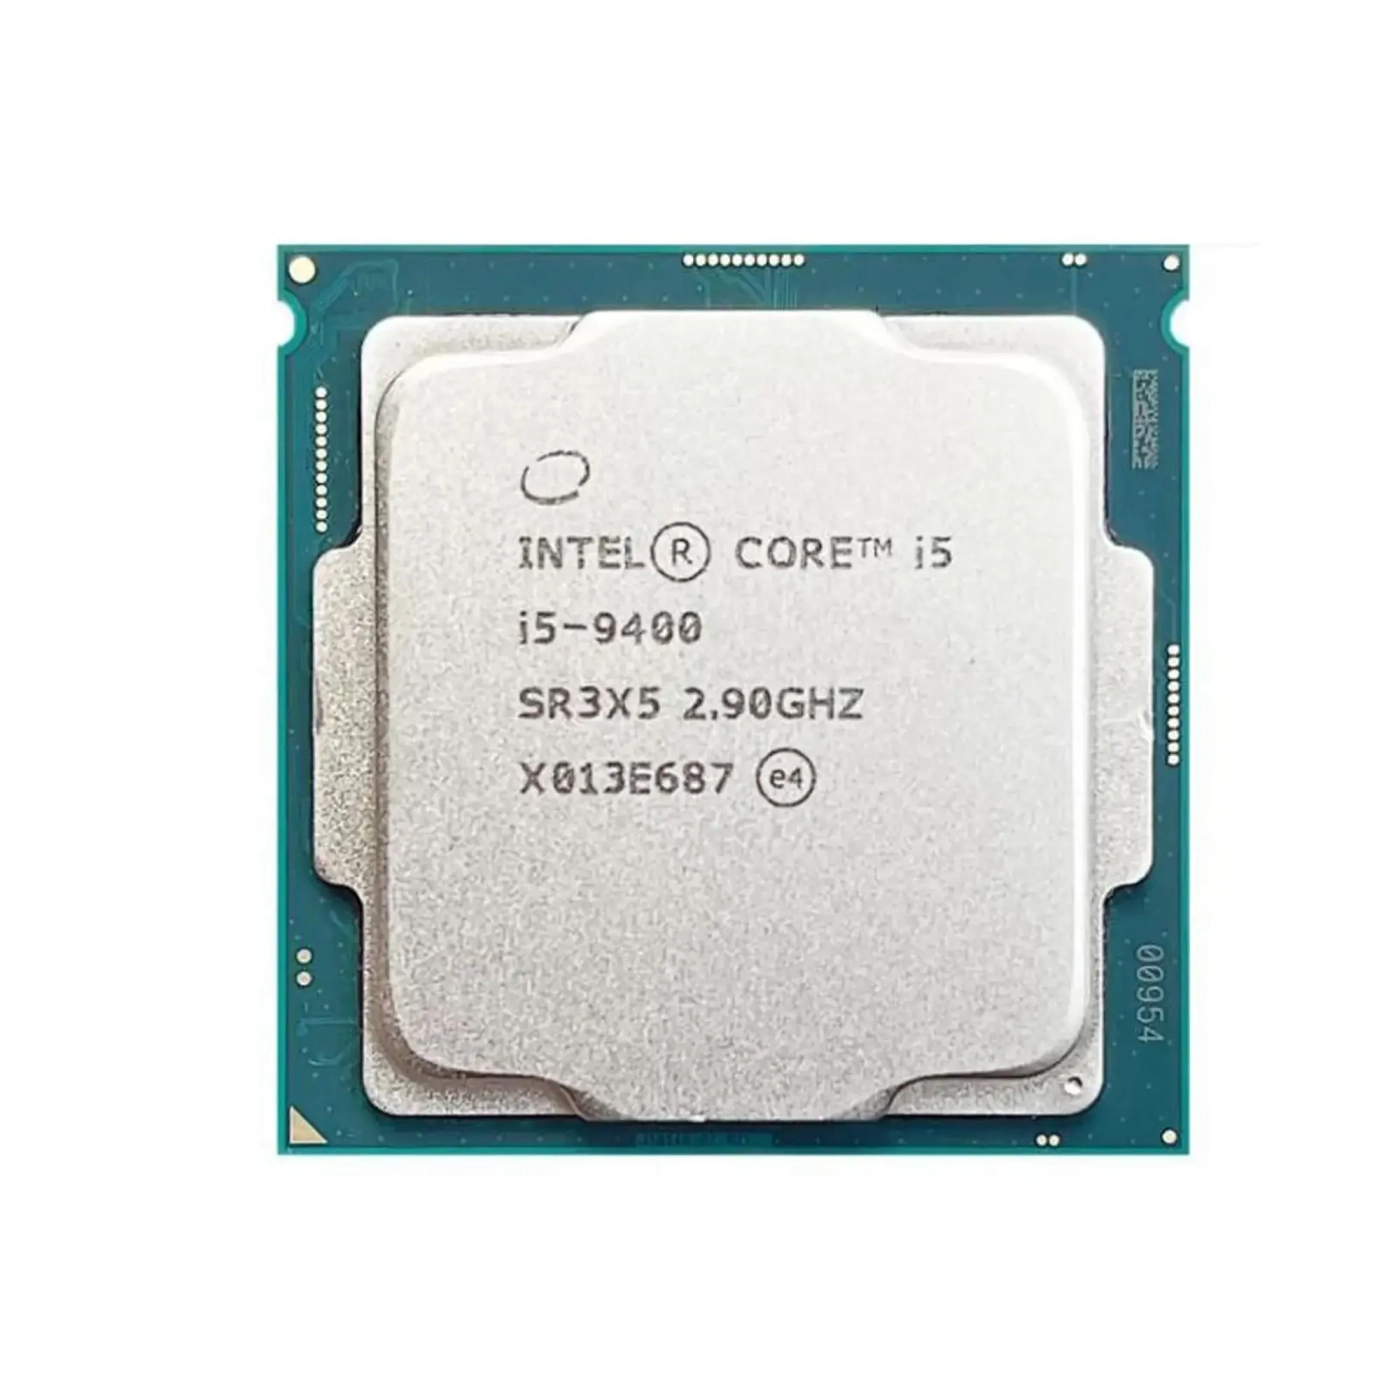 Купить Процессор Intel Core i5-9400 2.9GHz 9MB LGA1151 Tray (CM8068403358816) - фото 1